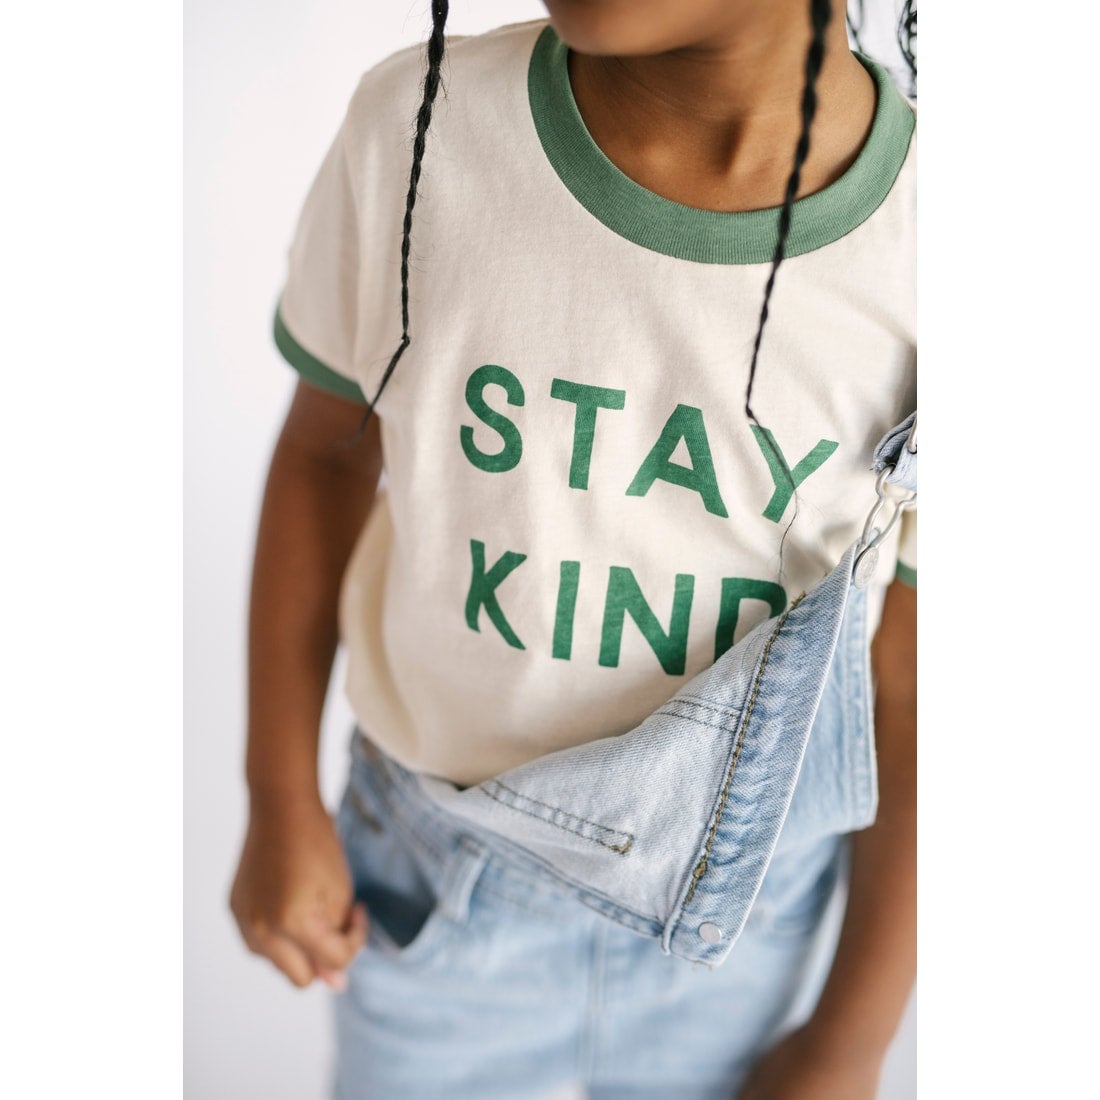 Polished Prints Kids Ringer Tee "Stay Kind"